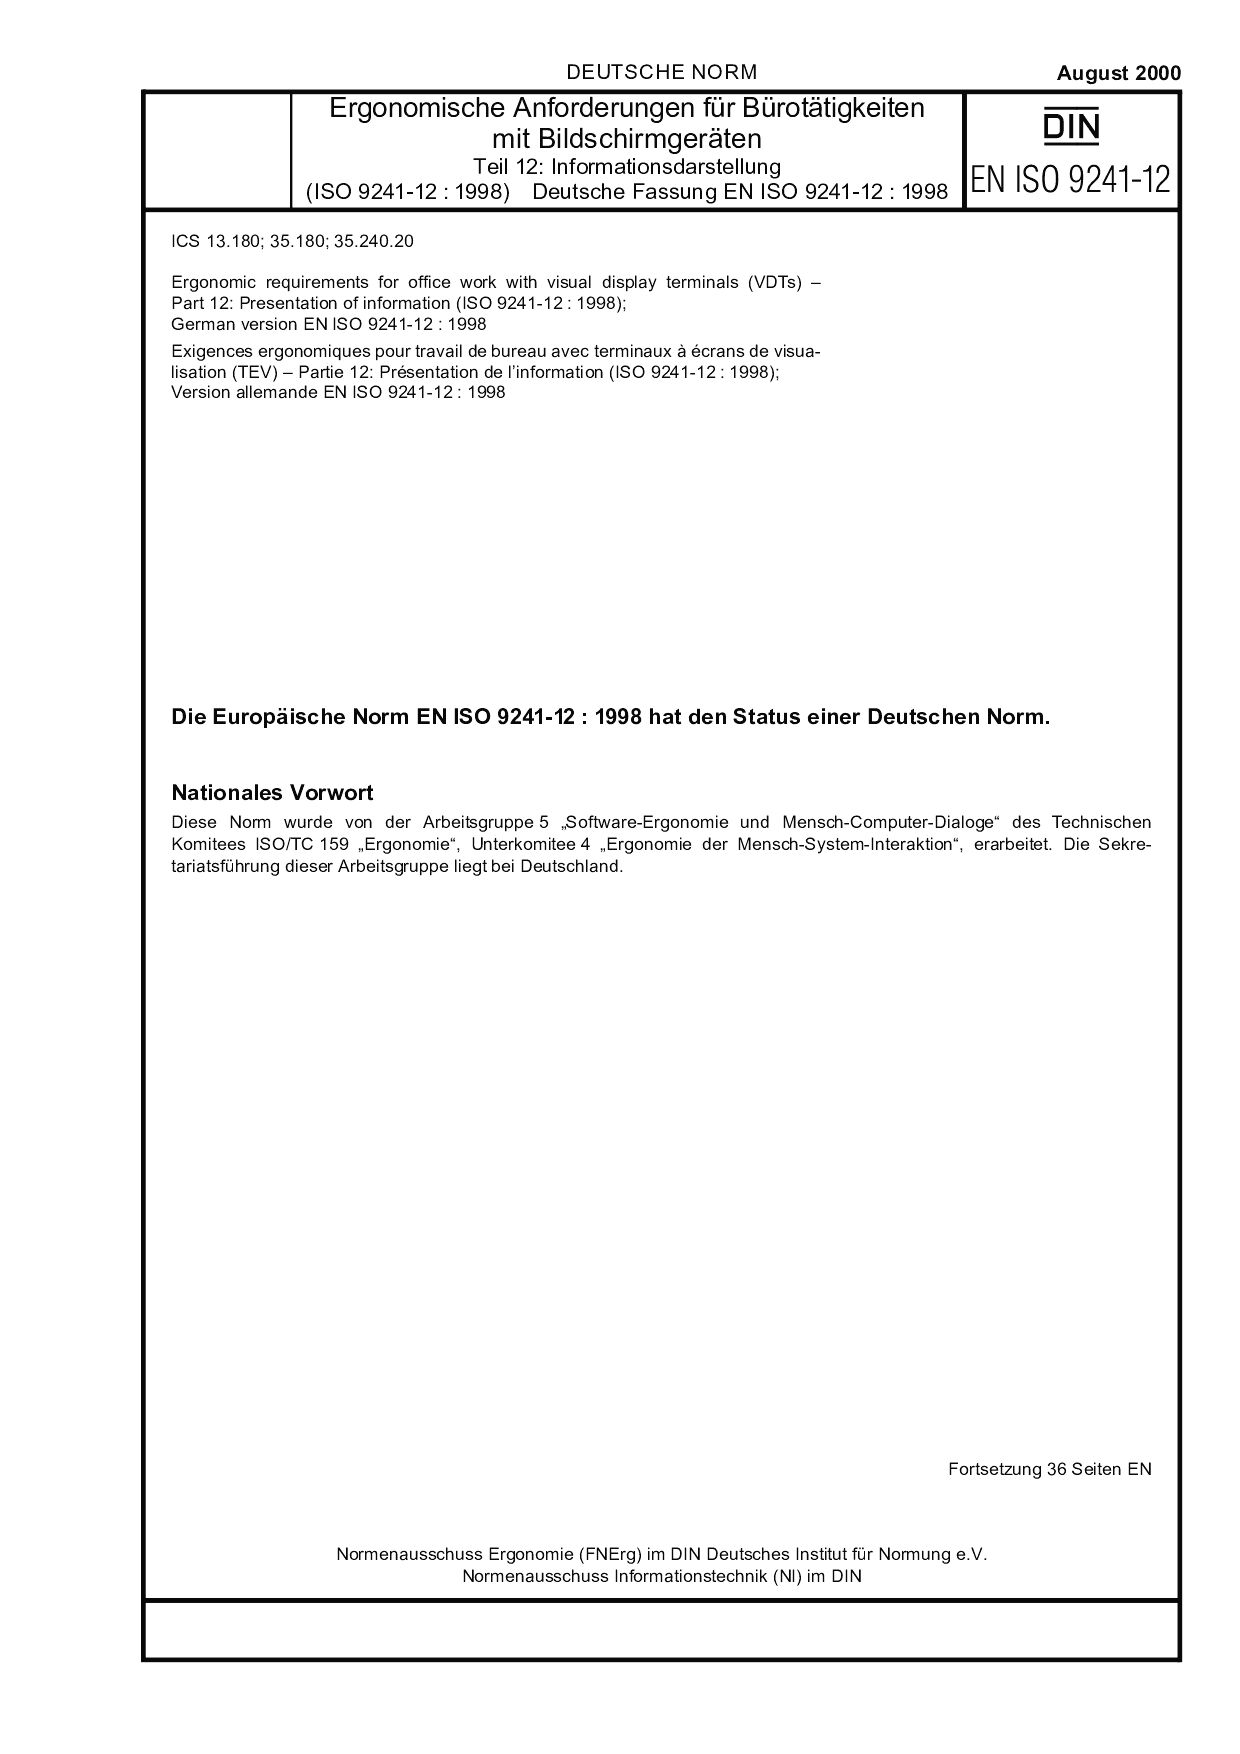 DIN EN ISO 9241-12:2000封面图